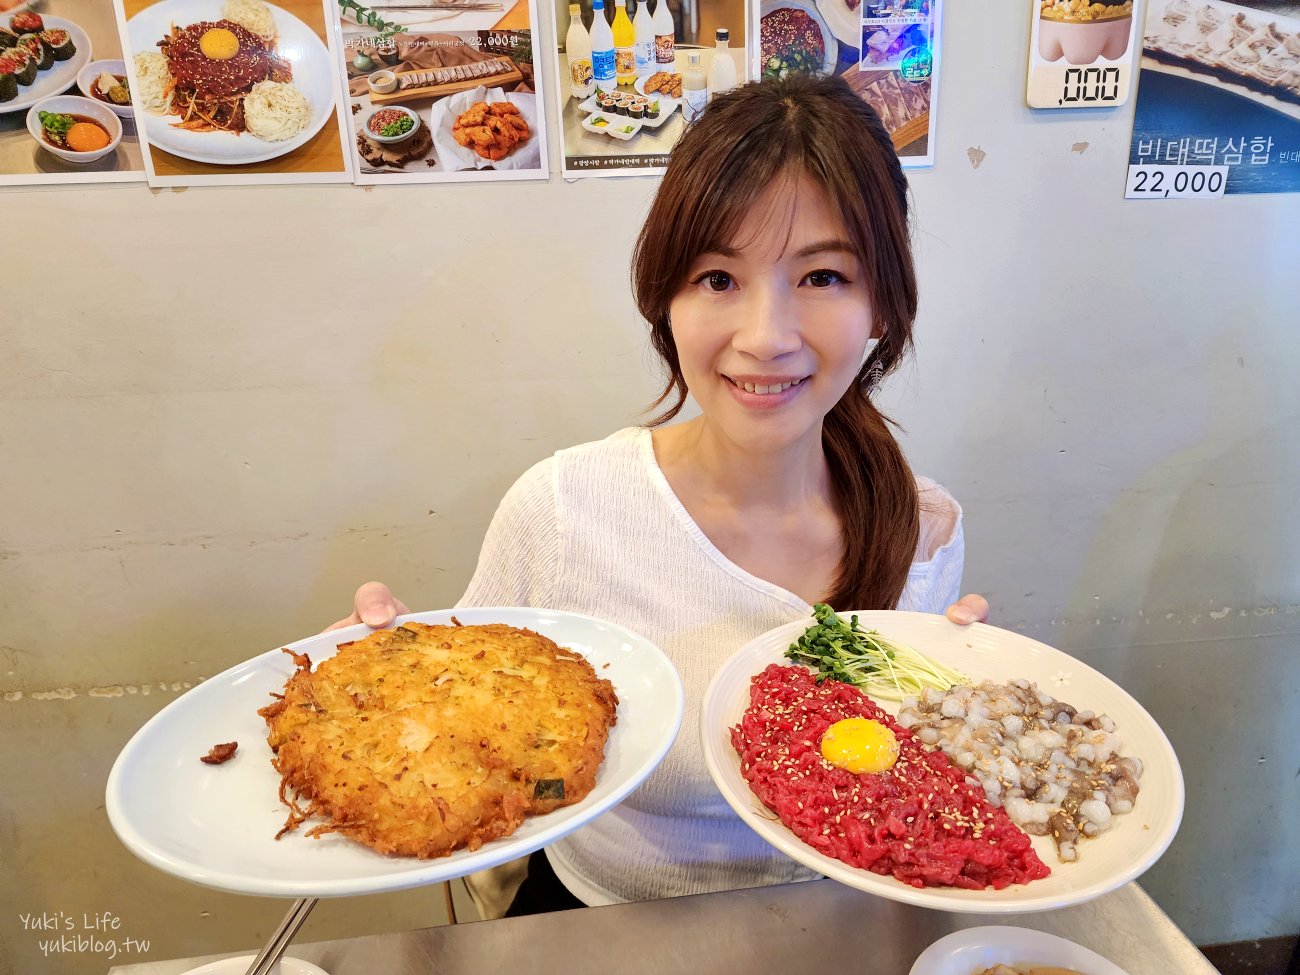 【韓國首爾】廣藏市場，首爾自由行推薦必來景點，滿滿傳統韓國美食攻略 - yukiblog.tw